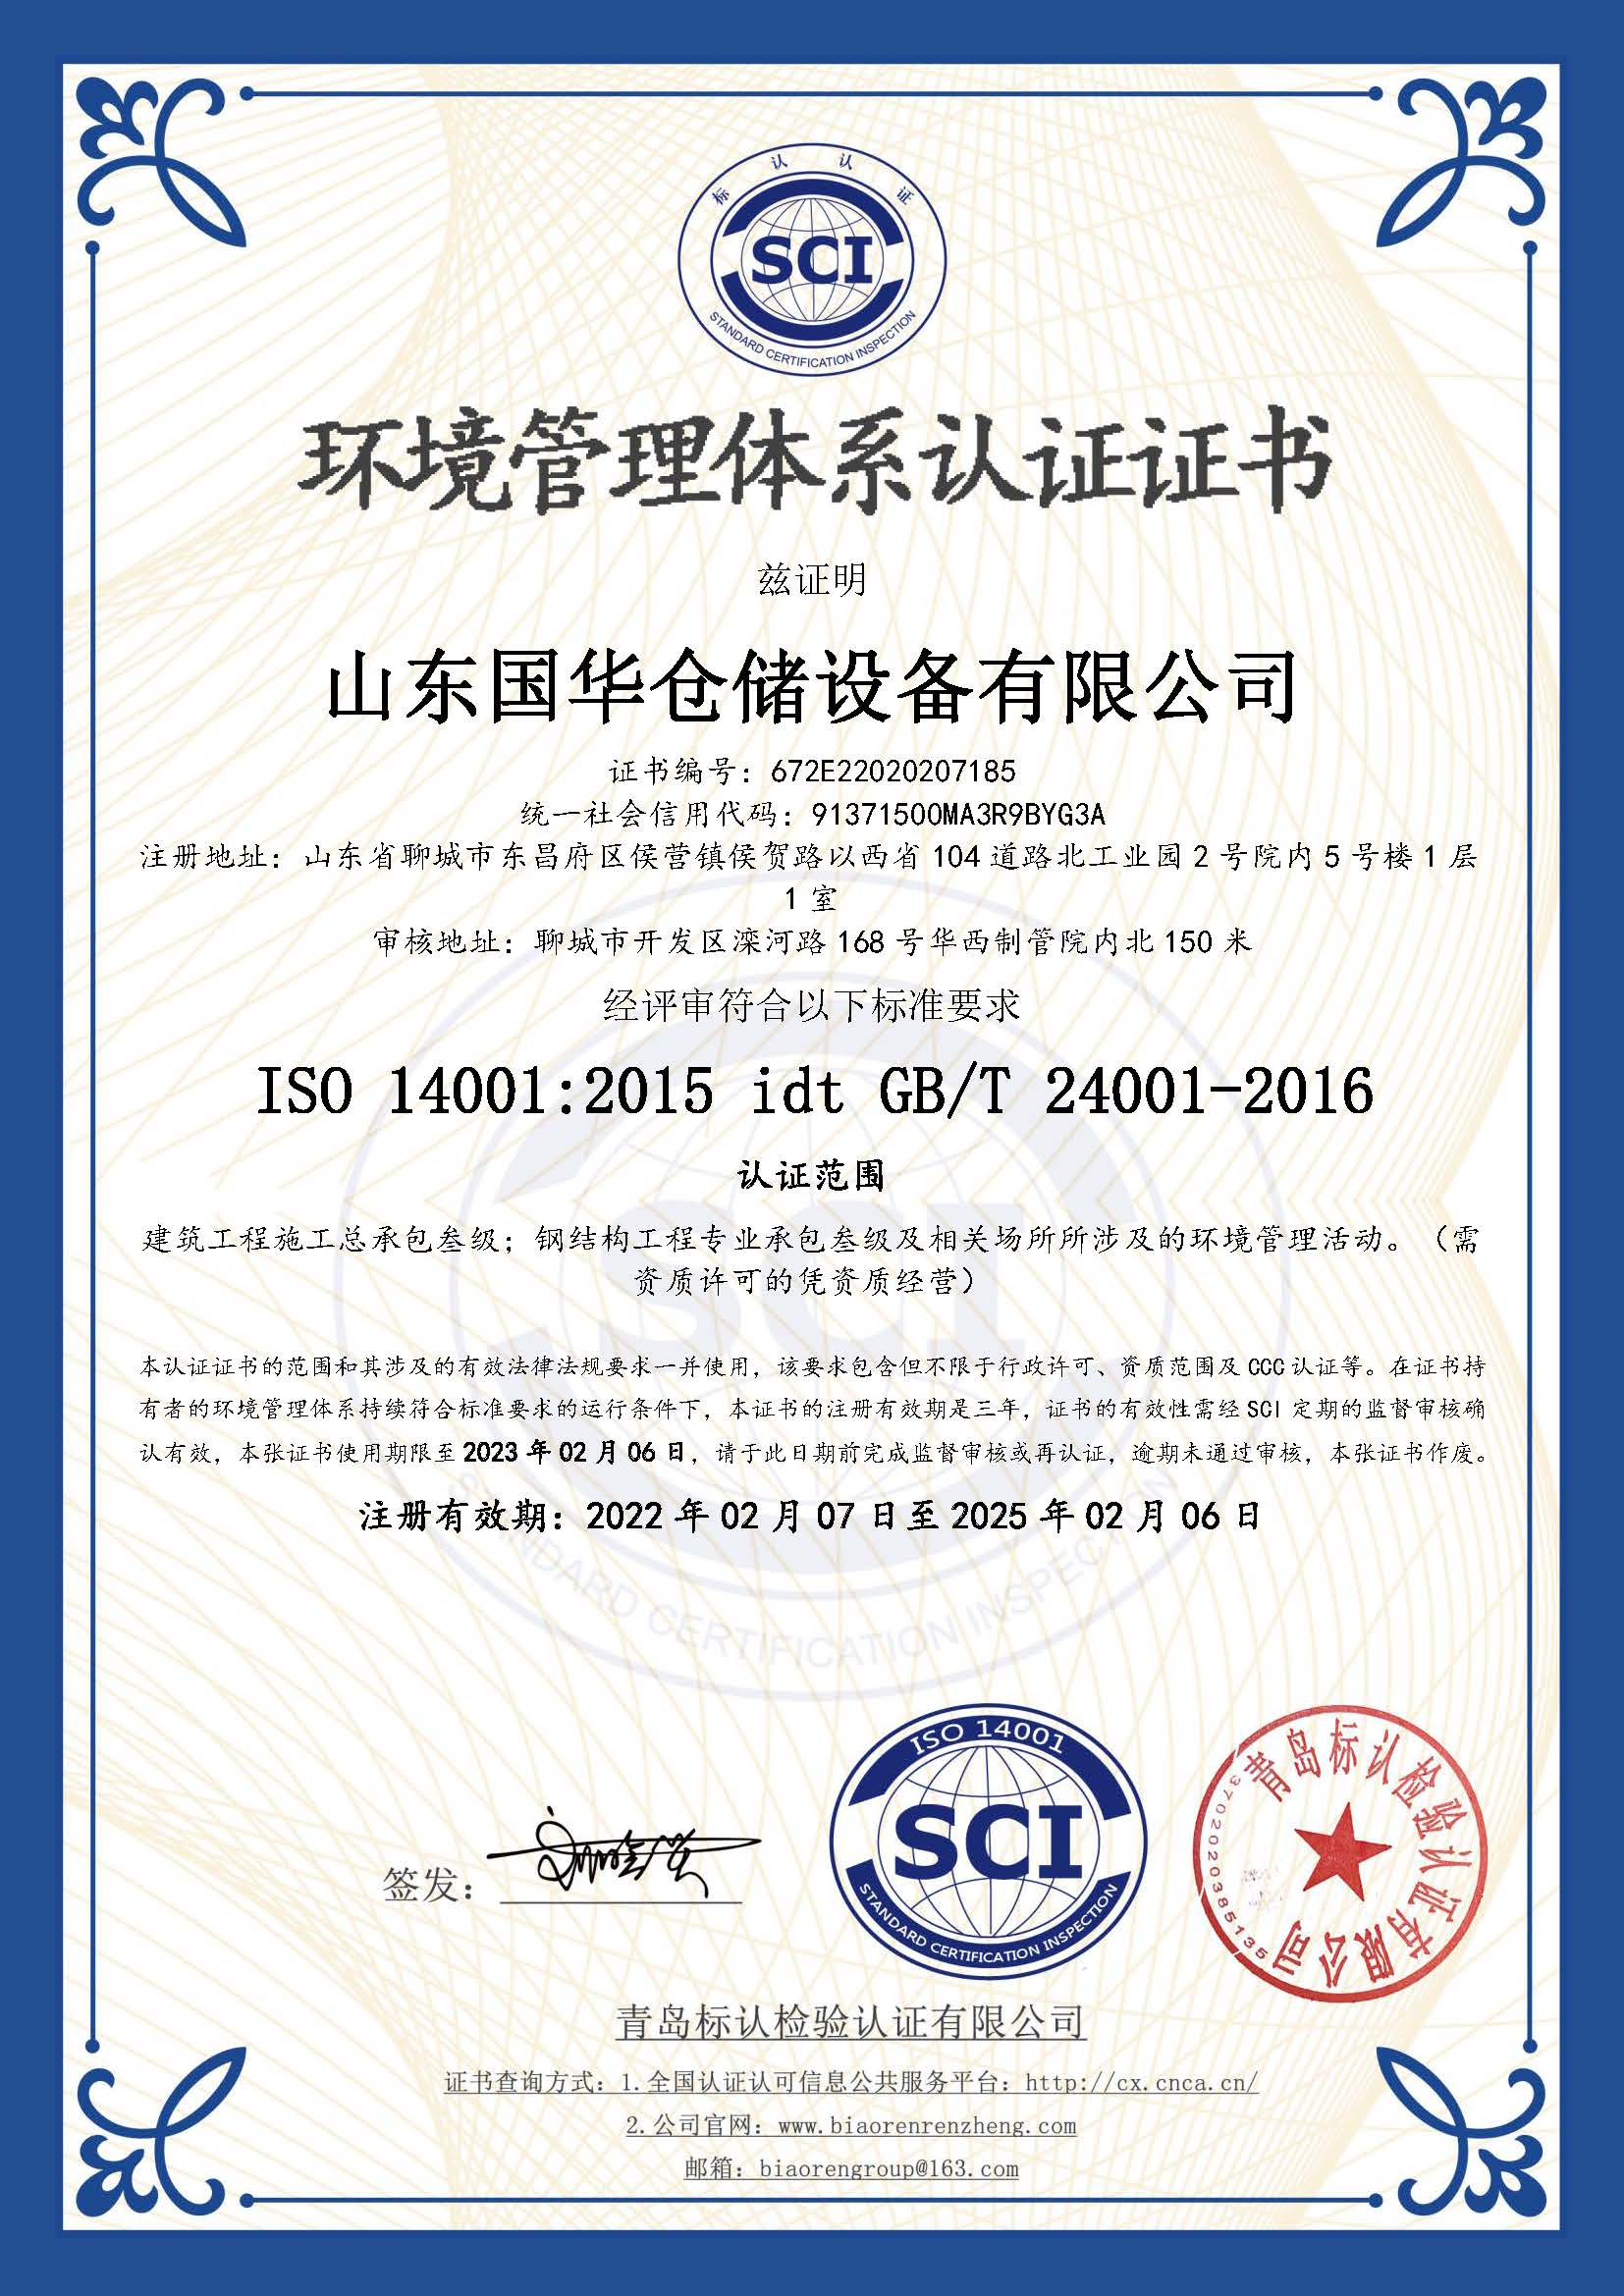 阿坝钢板仓环境管理体系认证证书